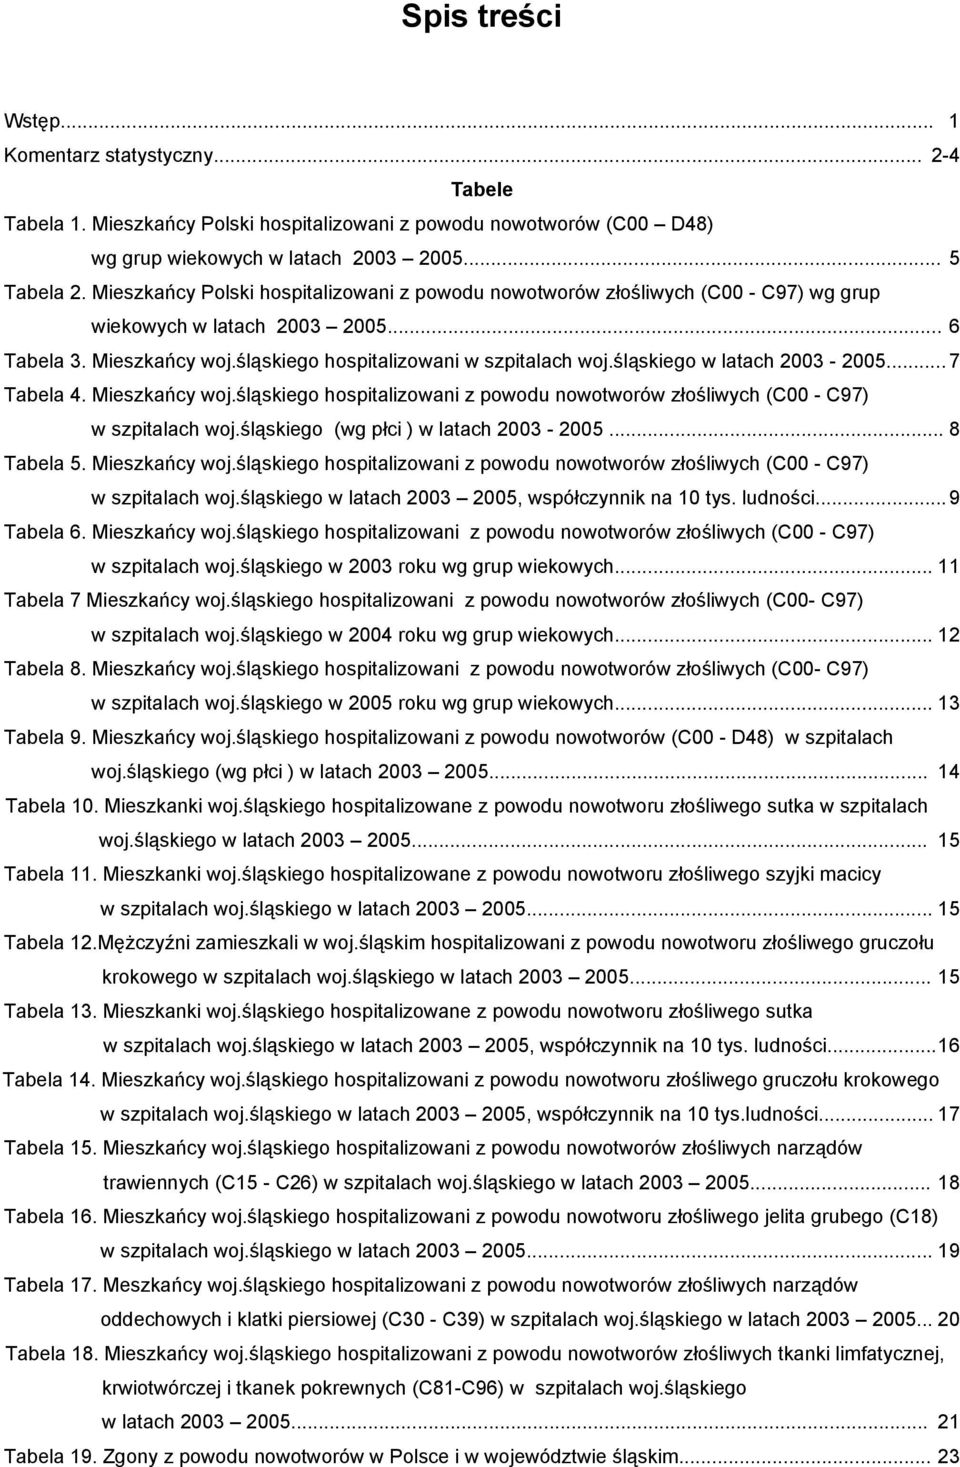 śląskiego w latach 2003-2005... 7 Tabela 4. Mieszkańcy woj.śląskiego hospitalizowani z powodu nowotworów złośliwych (C00 - C97) w szpitalach woj.śląskiego (wg płci ) w latach 2003-2005... 8 Tabela 5.